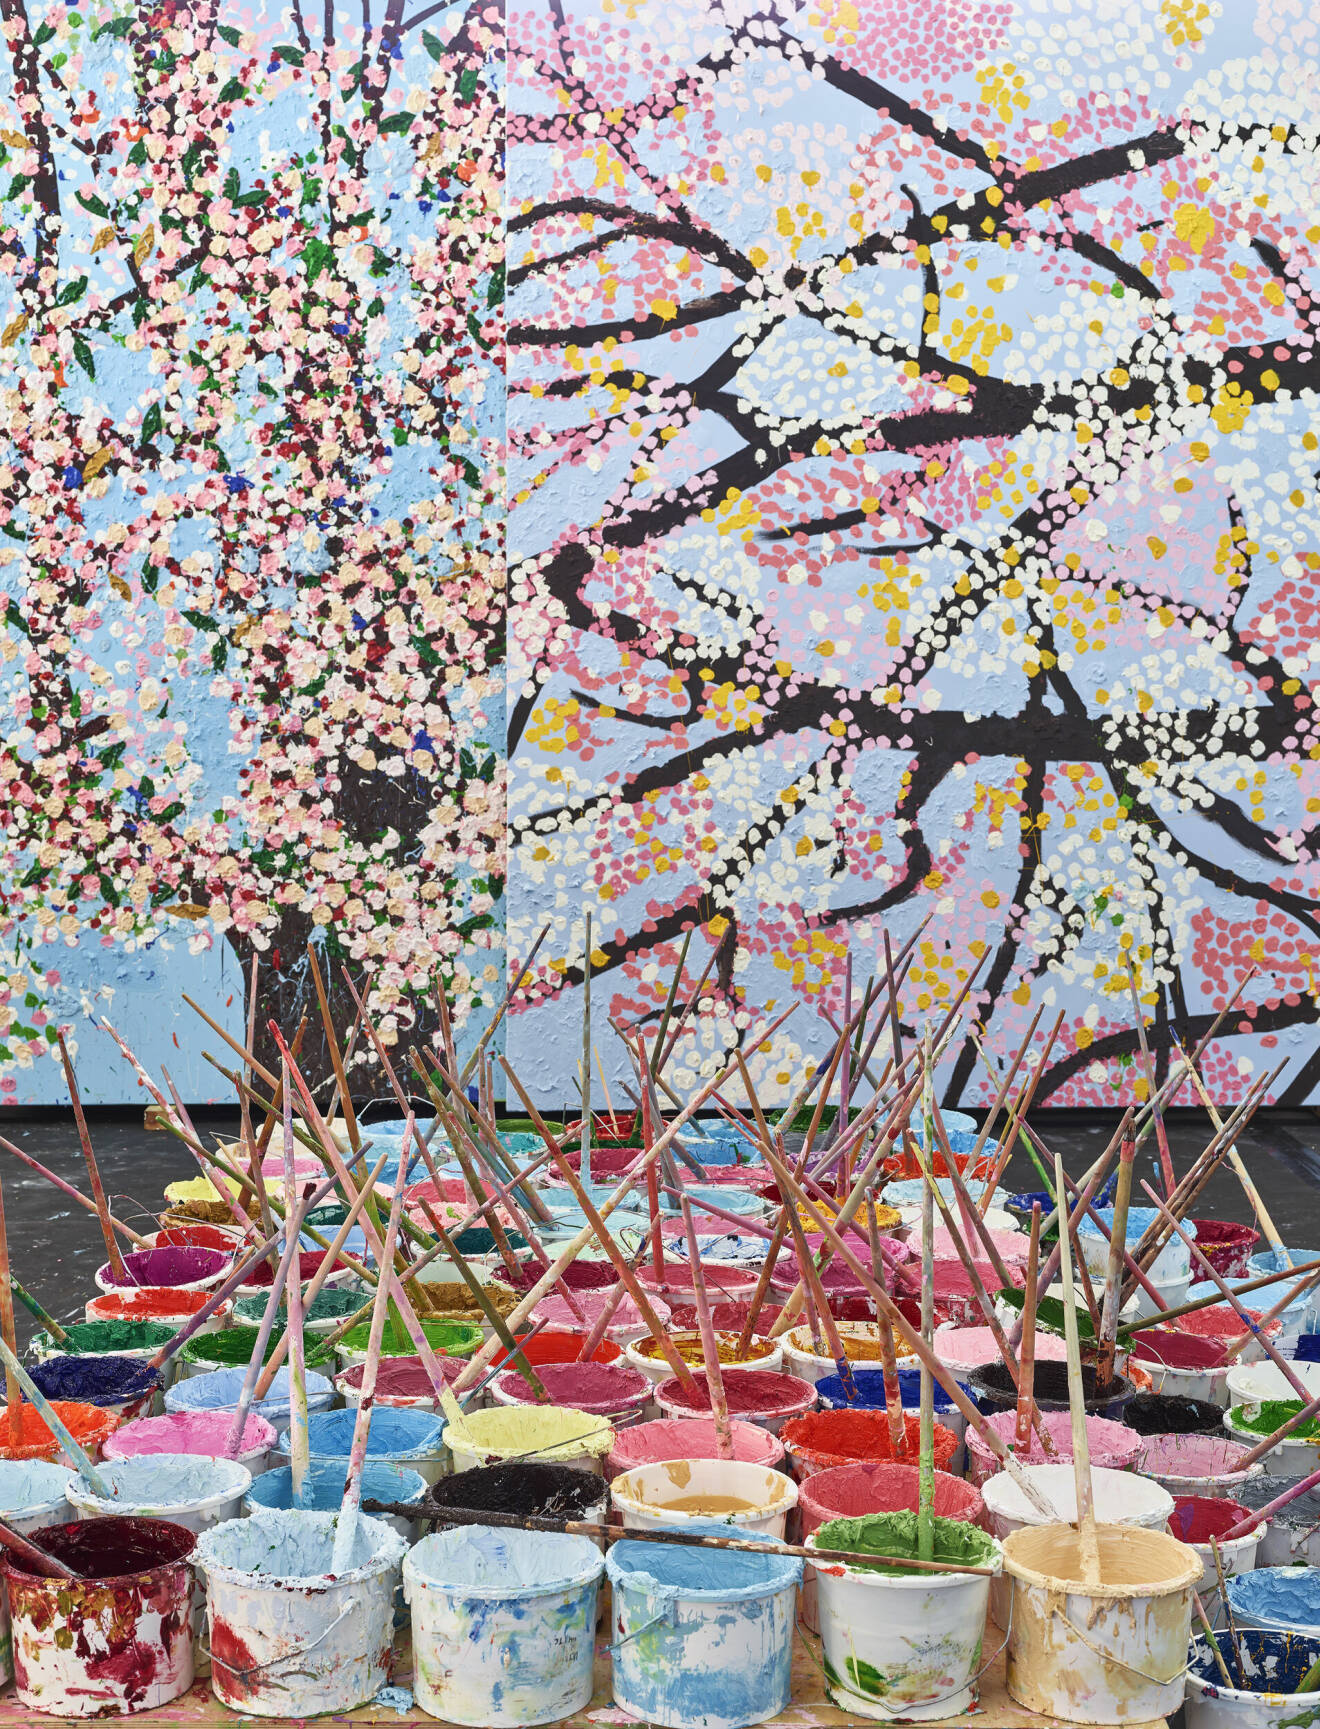 målburkar under tillverkningen av Cherry Blossoms Damien Hirst utställningen.